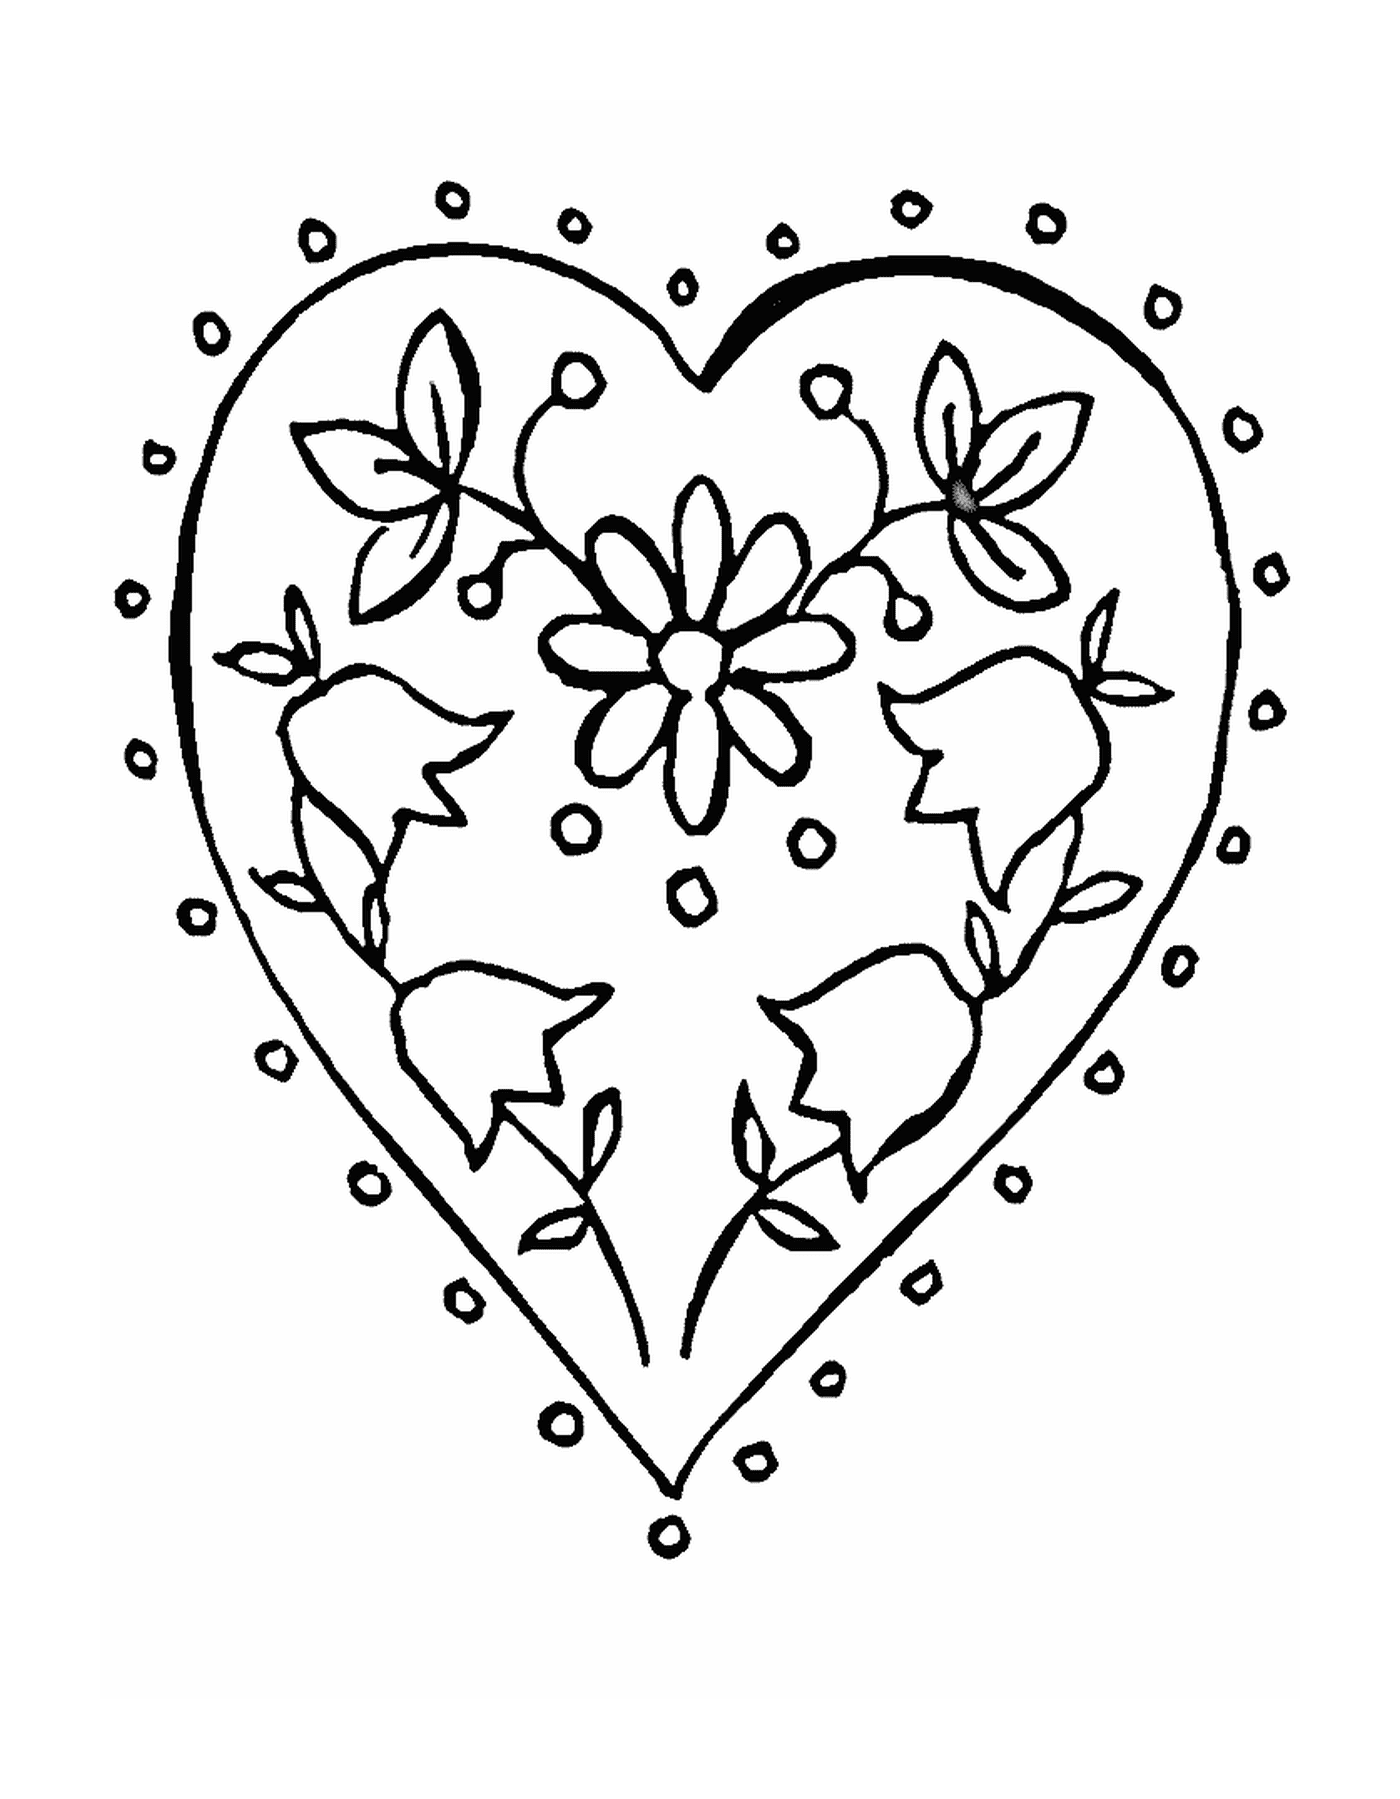  Ein Herz mit Blumen geschmückt 